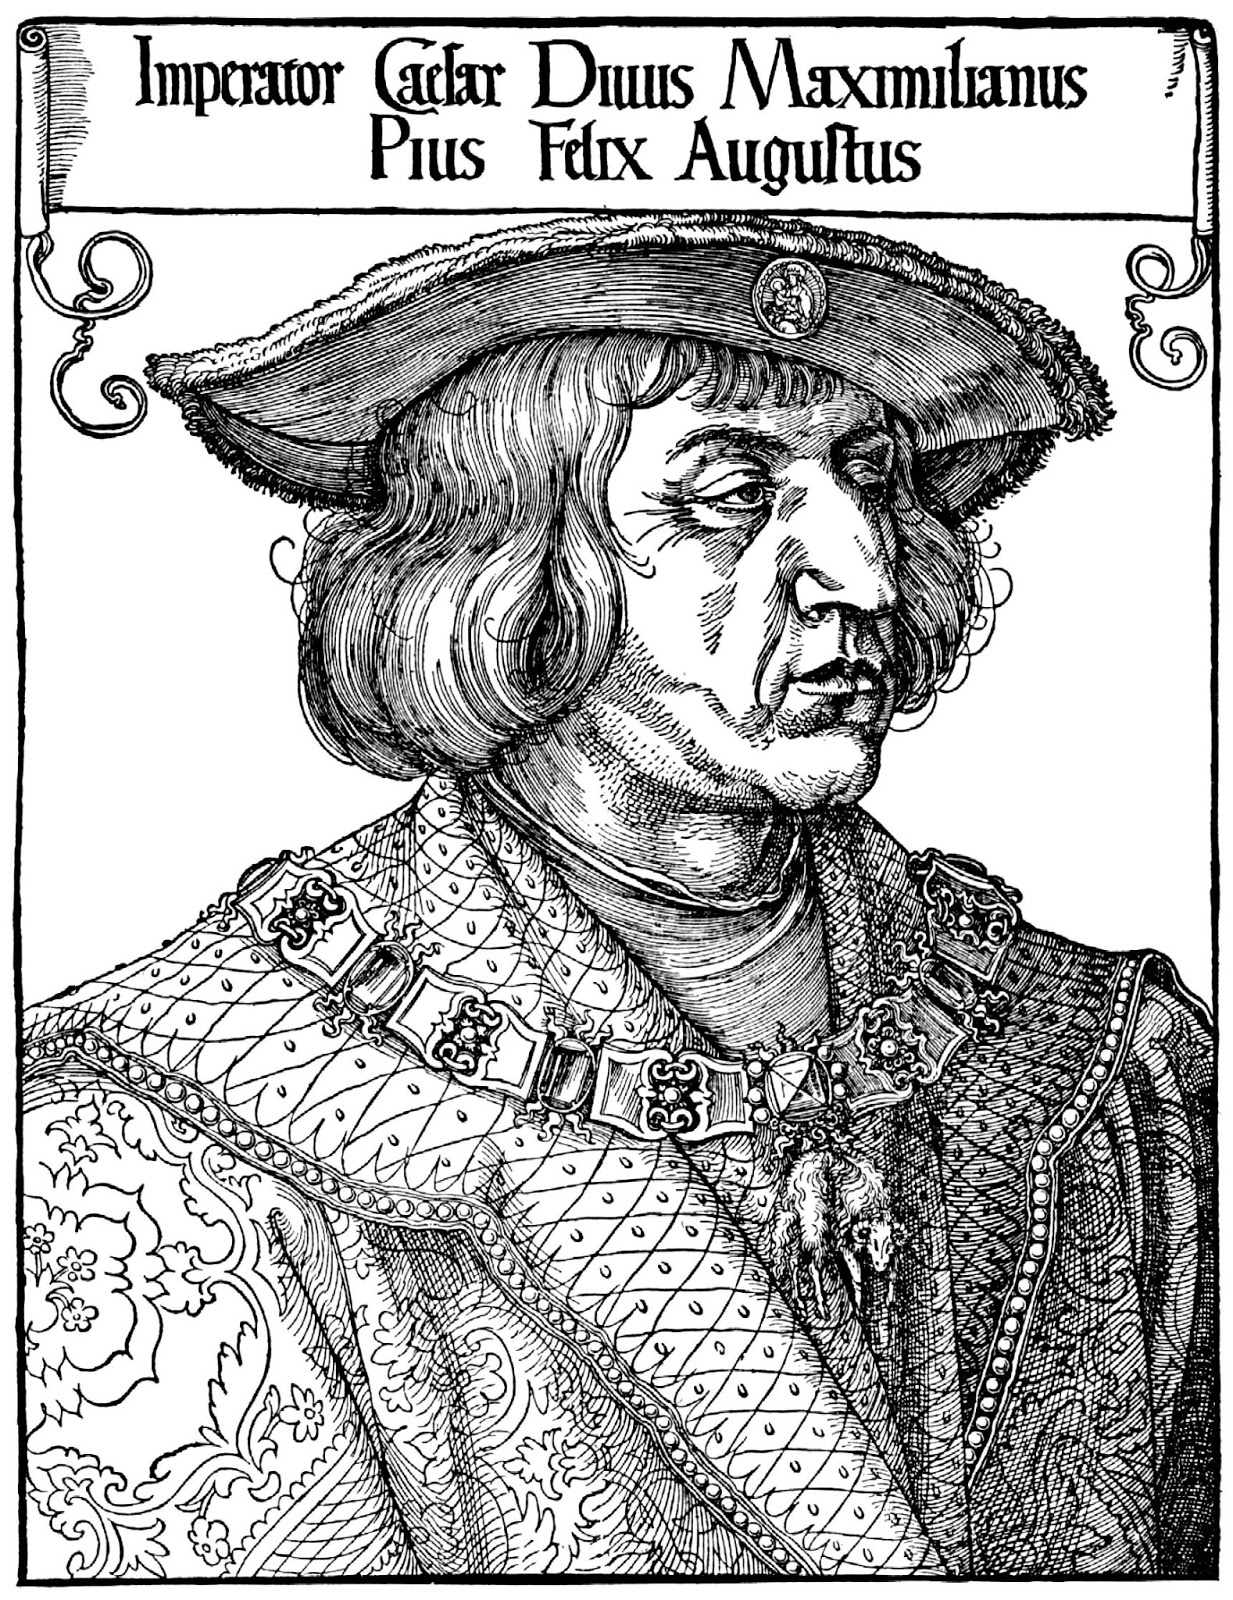 Nachdem Schüler Kaiser Maximilian von Dürer einen neuen Hut aufgesetzt hatten sollten sie im zweiten Schritt eine Neuinterpretation a la Rizzi